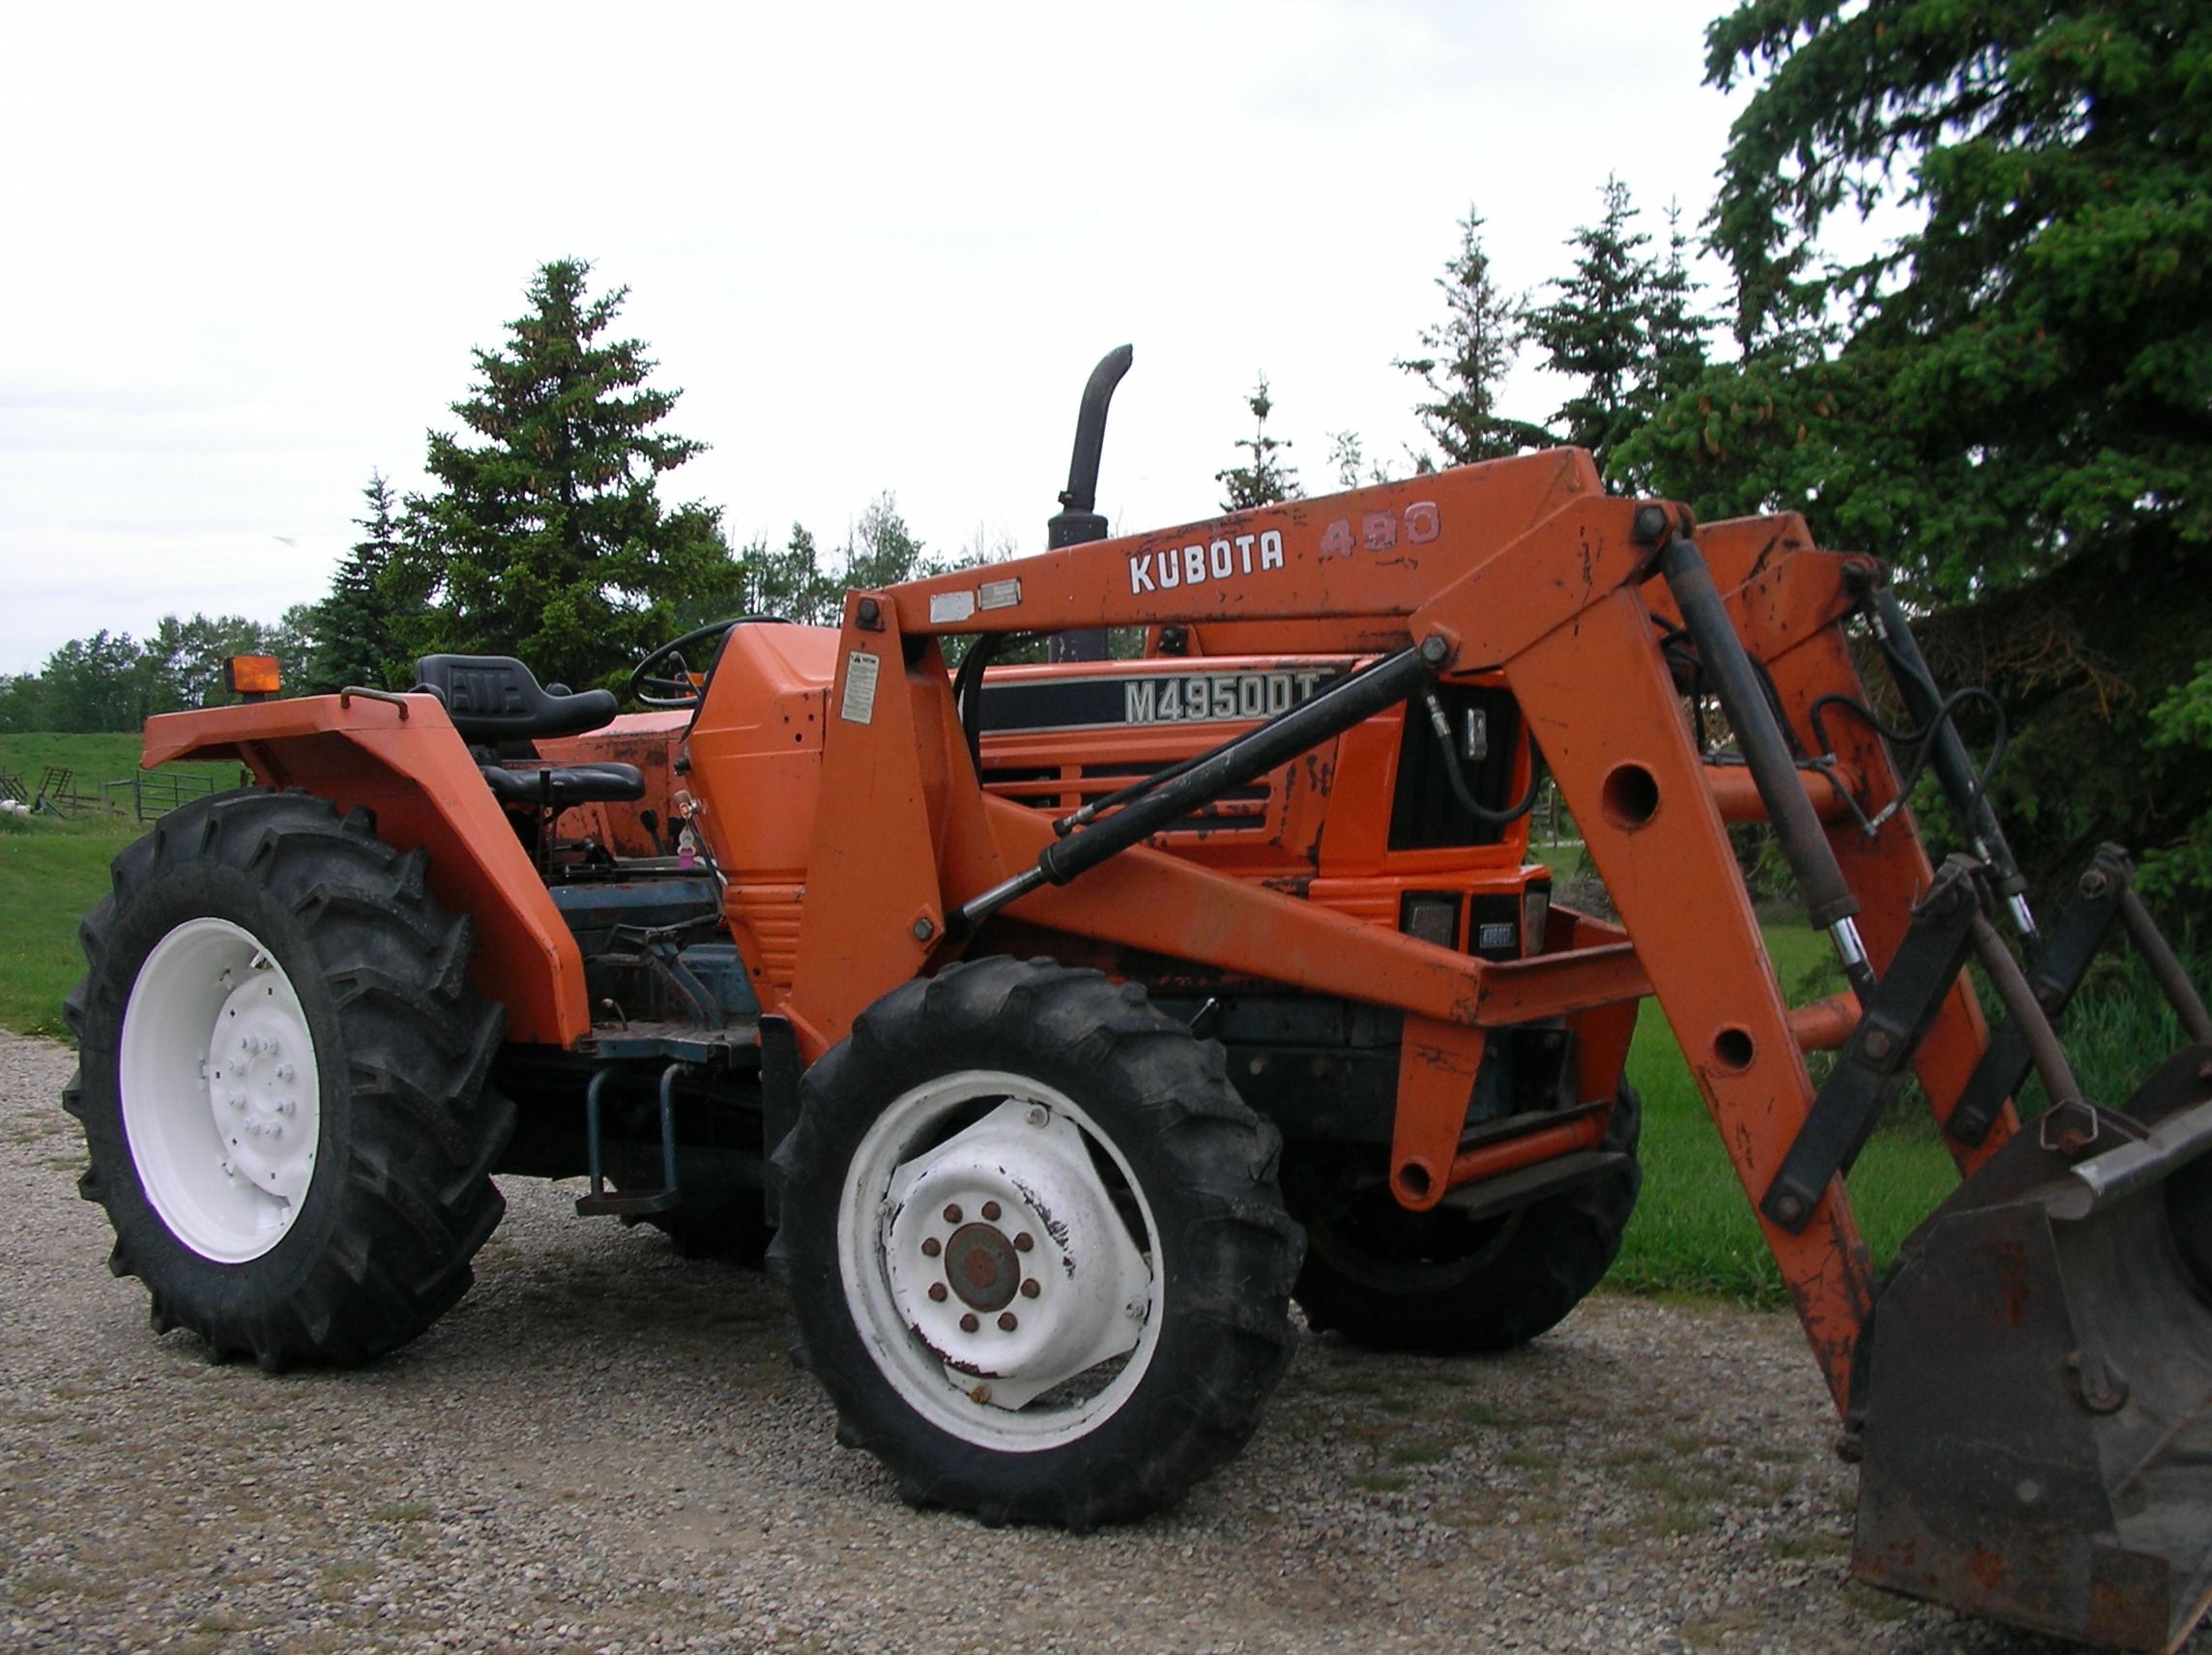 Good Used Tractors - #968 M4950 Kubota 4WD 50 HP Diesel